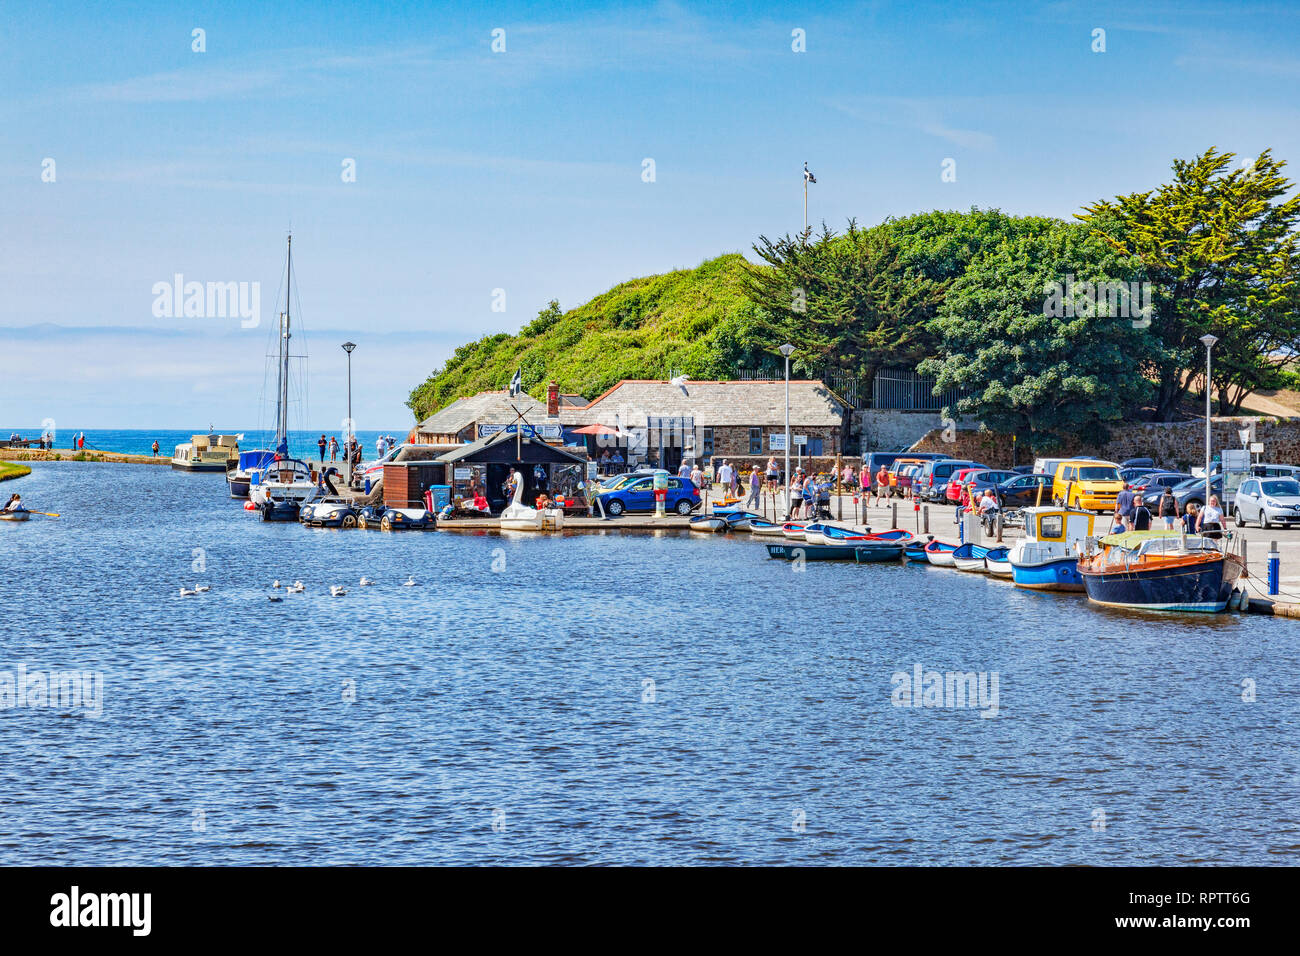 7 Luglio 2018: Bude, Cornwall, Regno Unito - Bude canale e alcune delle sue attrazioni, barche, persone durante la canicola estiva. Foto Stock